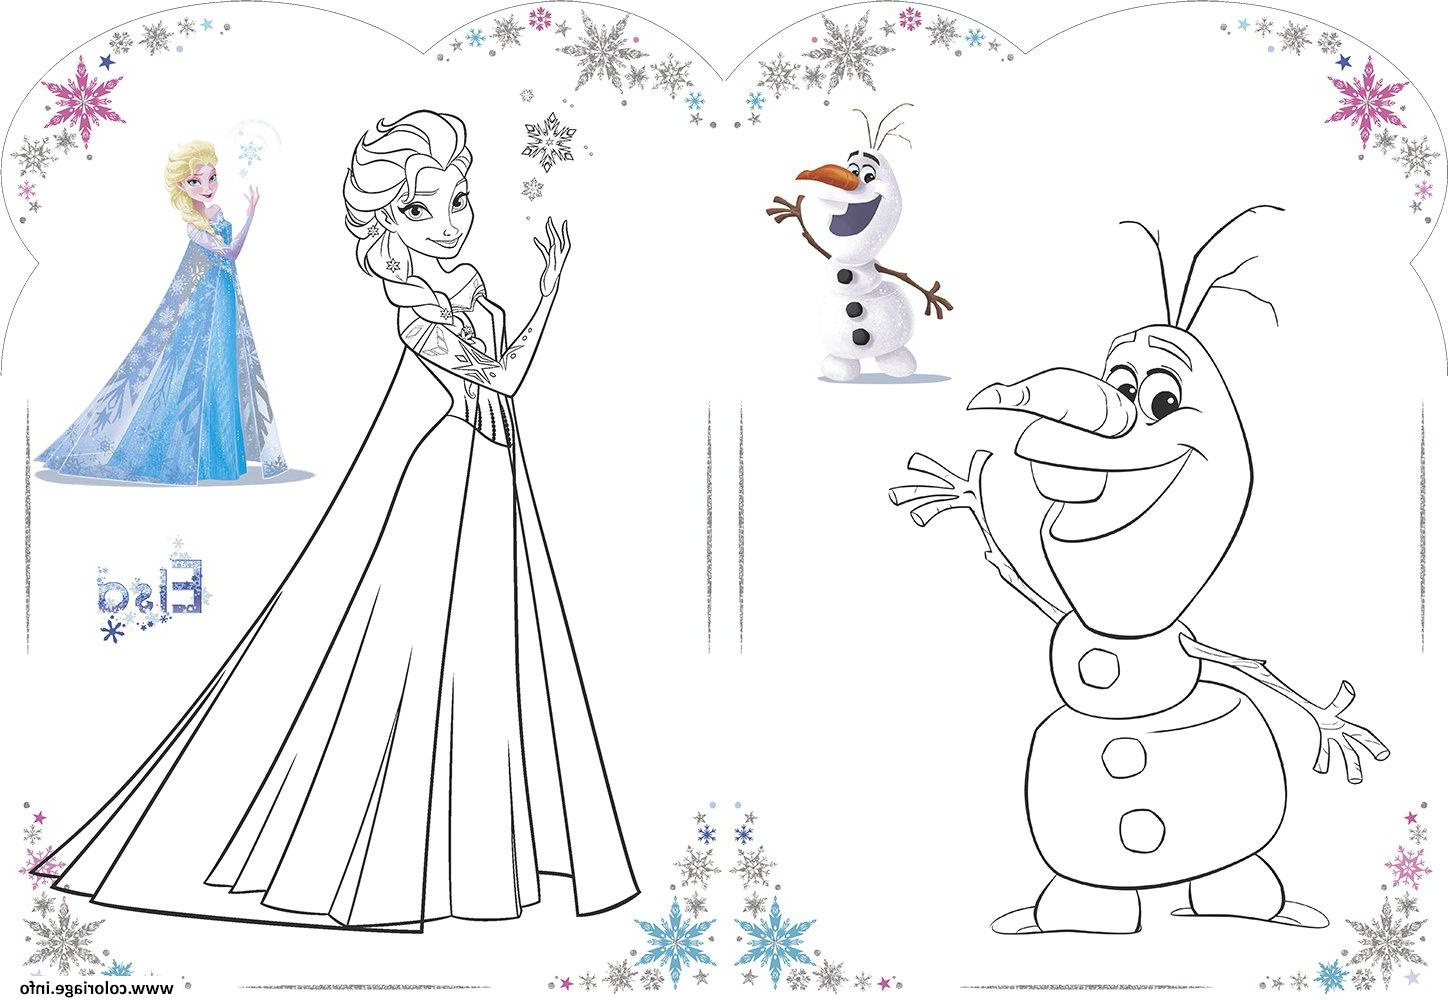 Coloriage Disney Reine Des Neiges Bestof Photos Coloriage Olaf Et Elsa Reine Des Neiges Disney 2018 Dessin